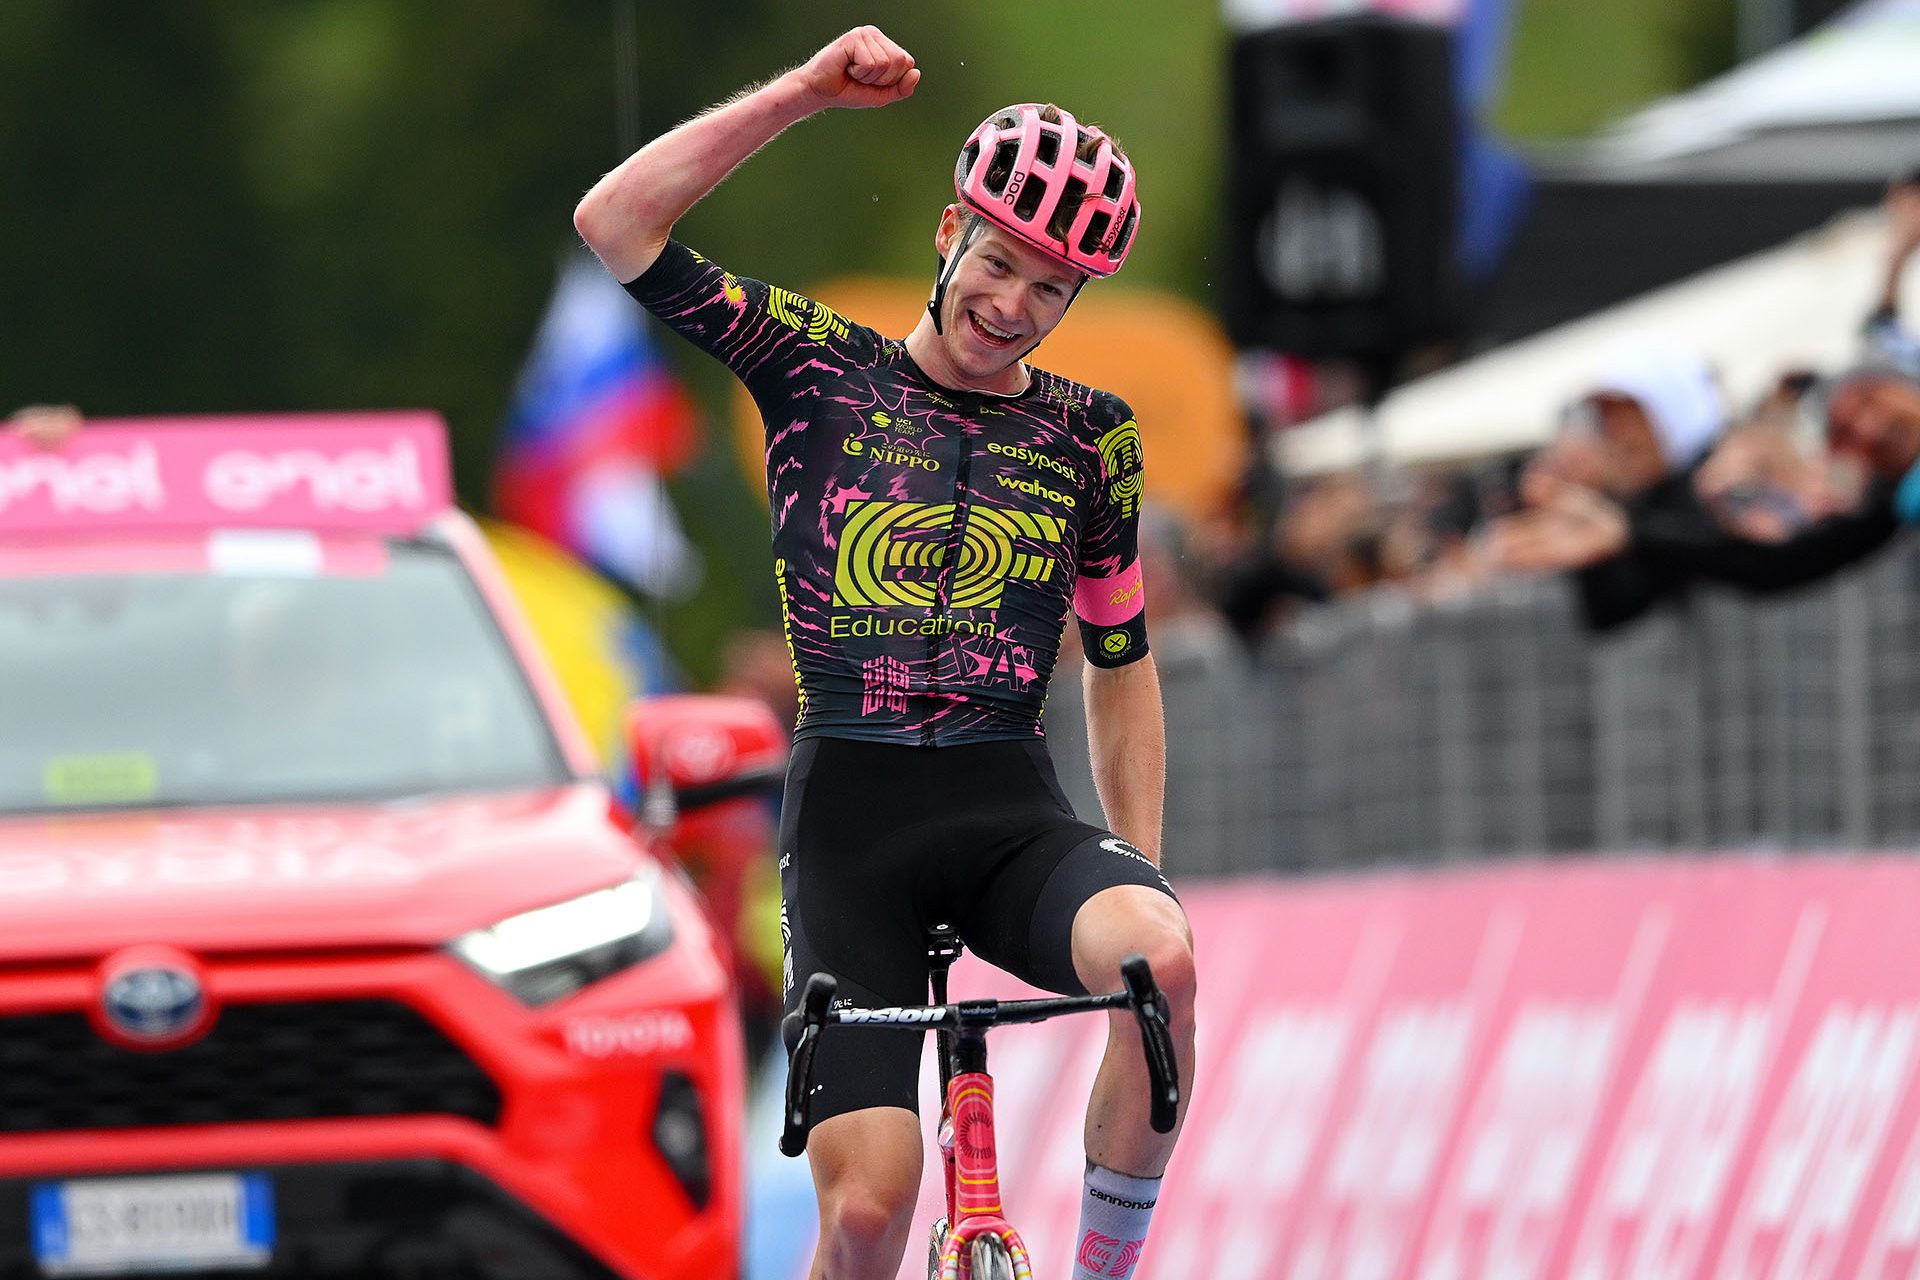 Erster Podiumsplatz und großer Etappensieg beim Giro d'Italia